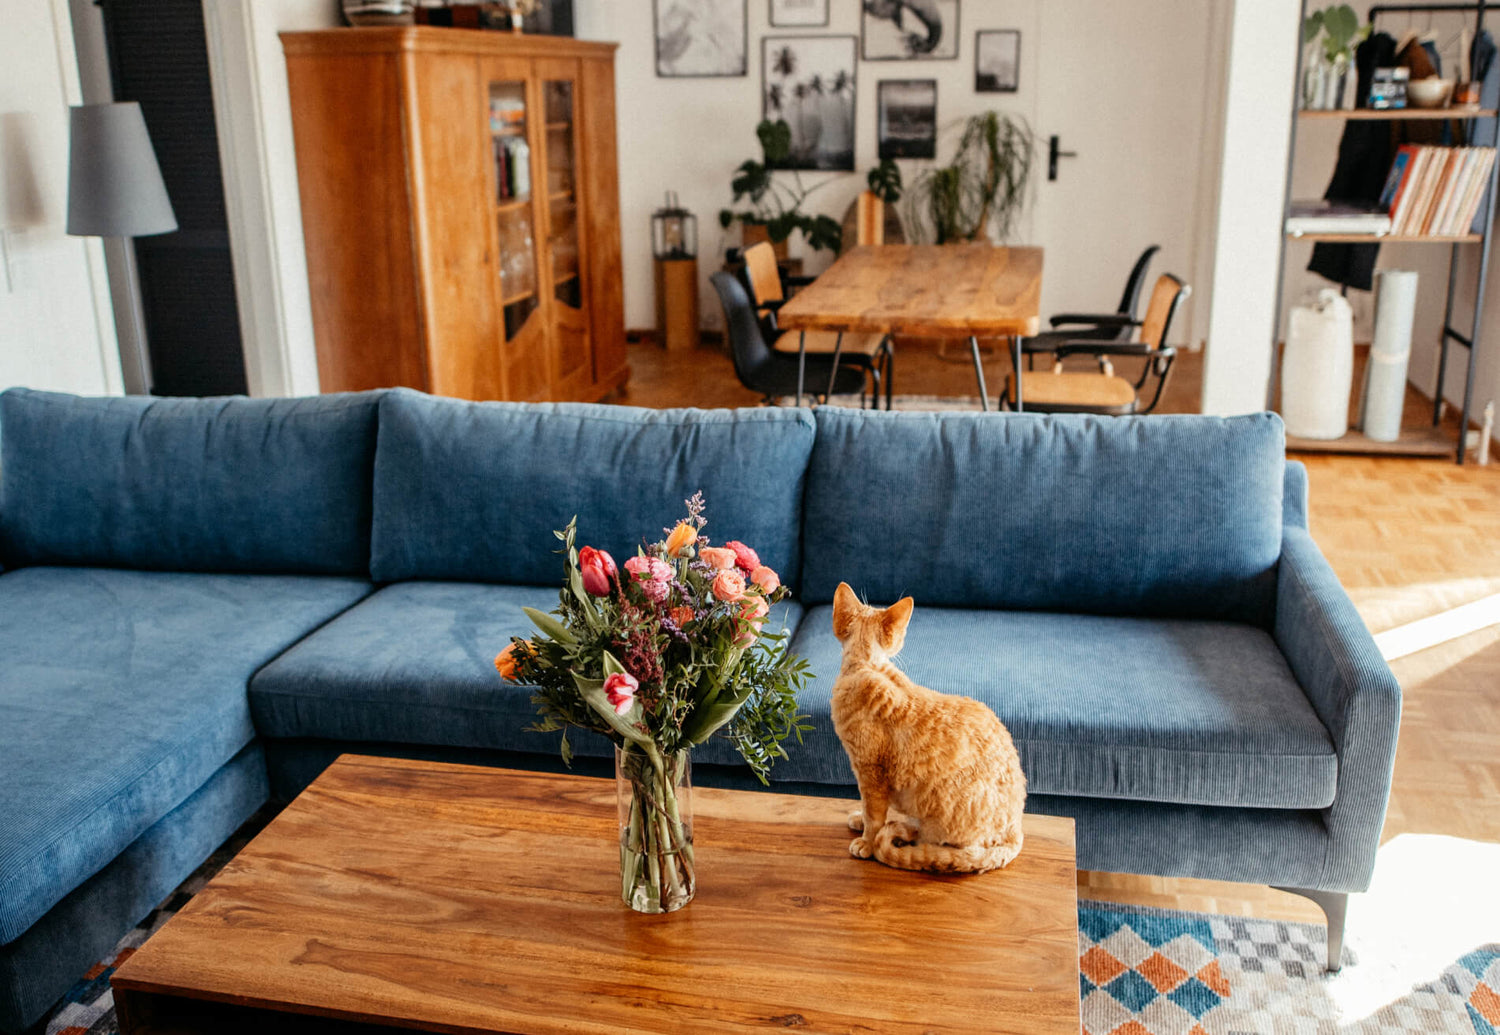 Angies und Saschas Wohnzimmer. Blumentstraus und Katze sitzen auf dem Wohnzimmertisch.